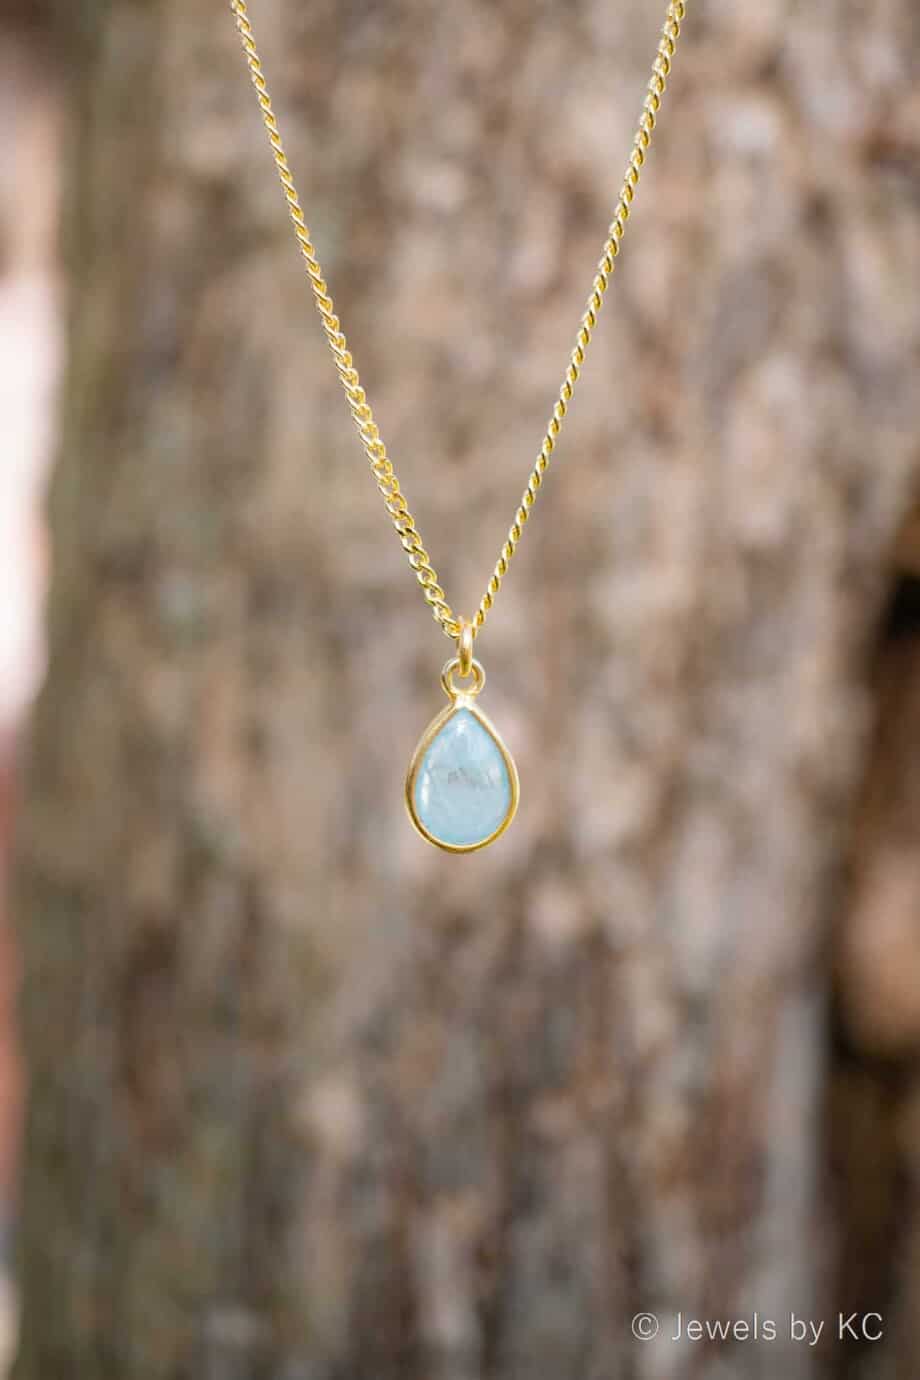 Edelsteen sieraden: Gouden ketting met edelsteen blauwe ‘Aquamarijn' van Goud op Zilver. Handgemaakte edelsteen sieraden van Jewels by KC.